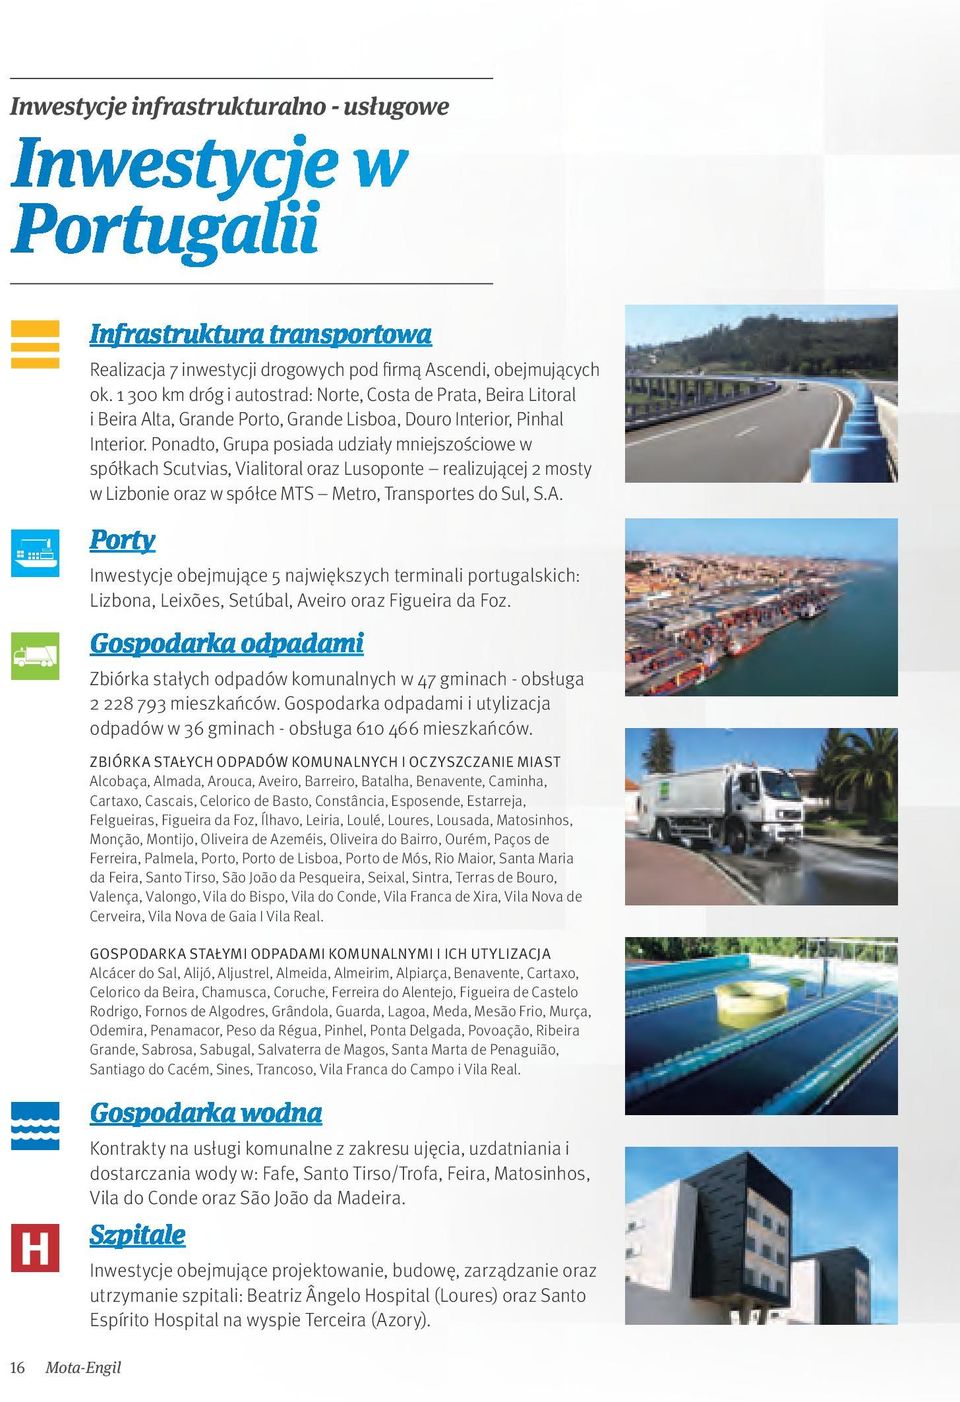 Ponadto, Grupa posiada udziały mniejszościowe w spółkach Scutvias, Vialitoral oraz Lusoponte realizującej 2 mosty w Lizbonie oraz w spółce MTS Metro, Transportes do Sul, S.A.